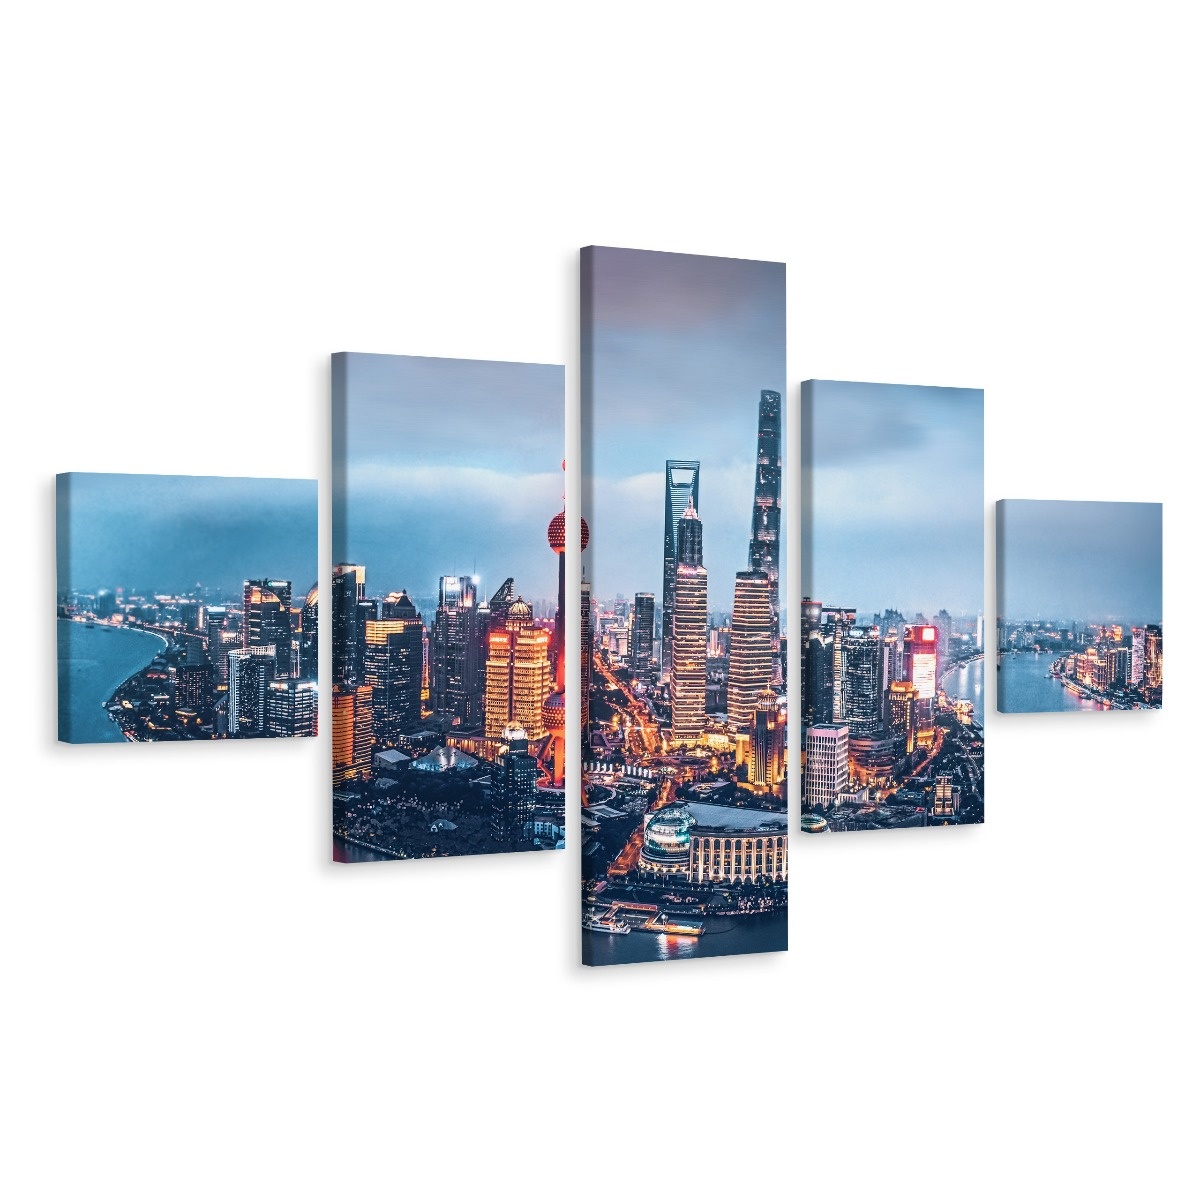 Schilderij - Shanghai panorama, 5 luik, Premium print